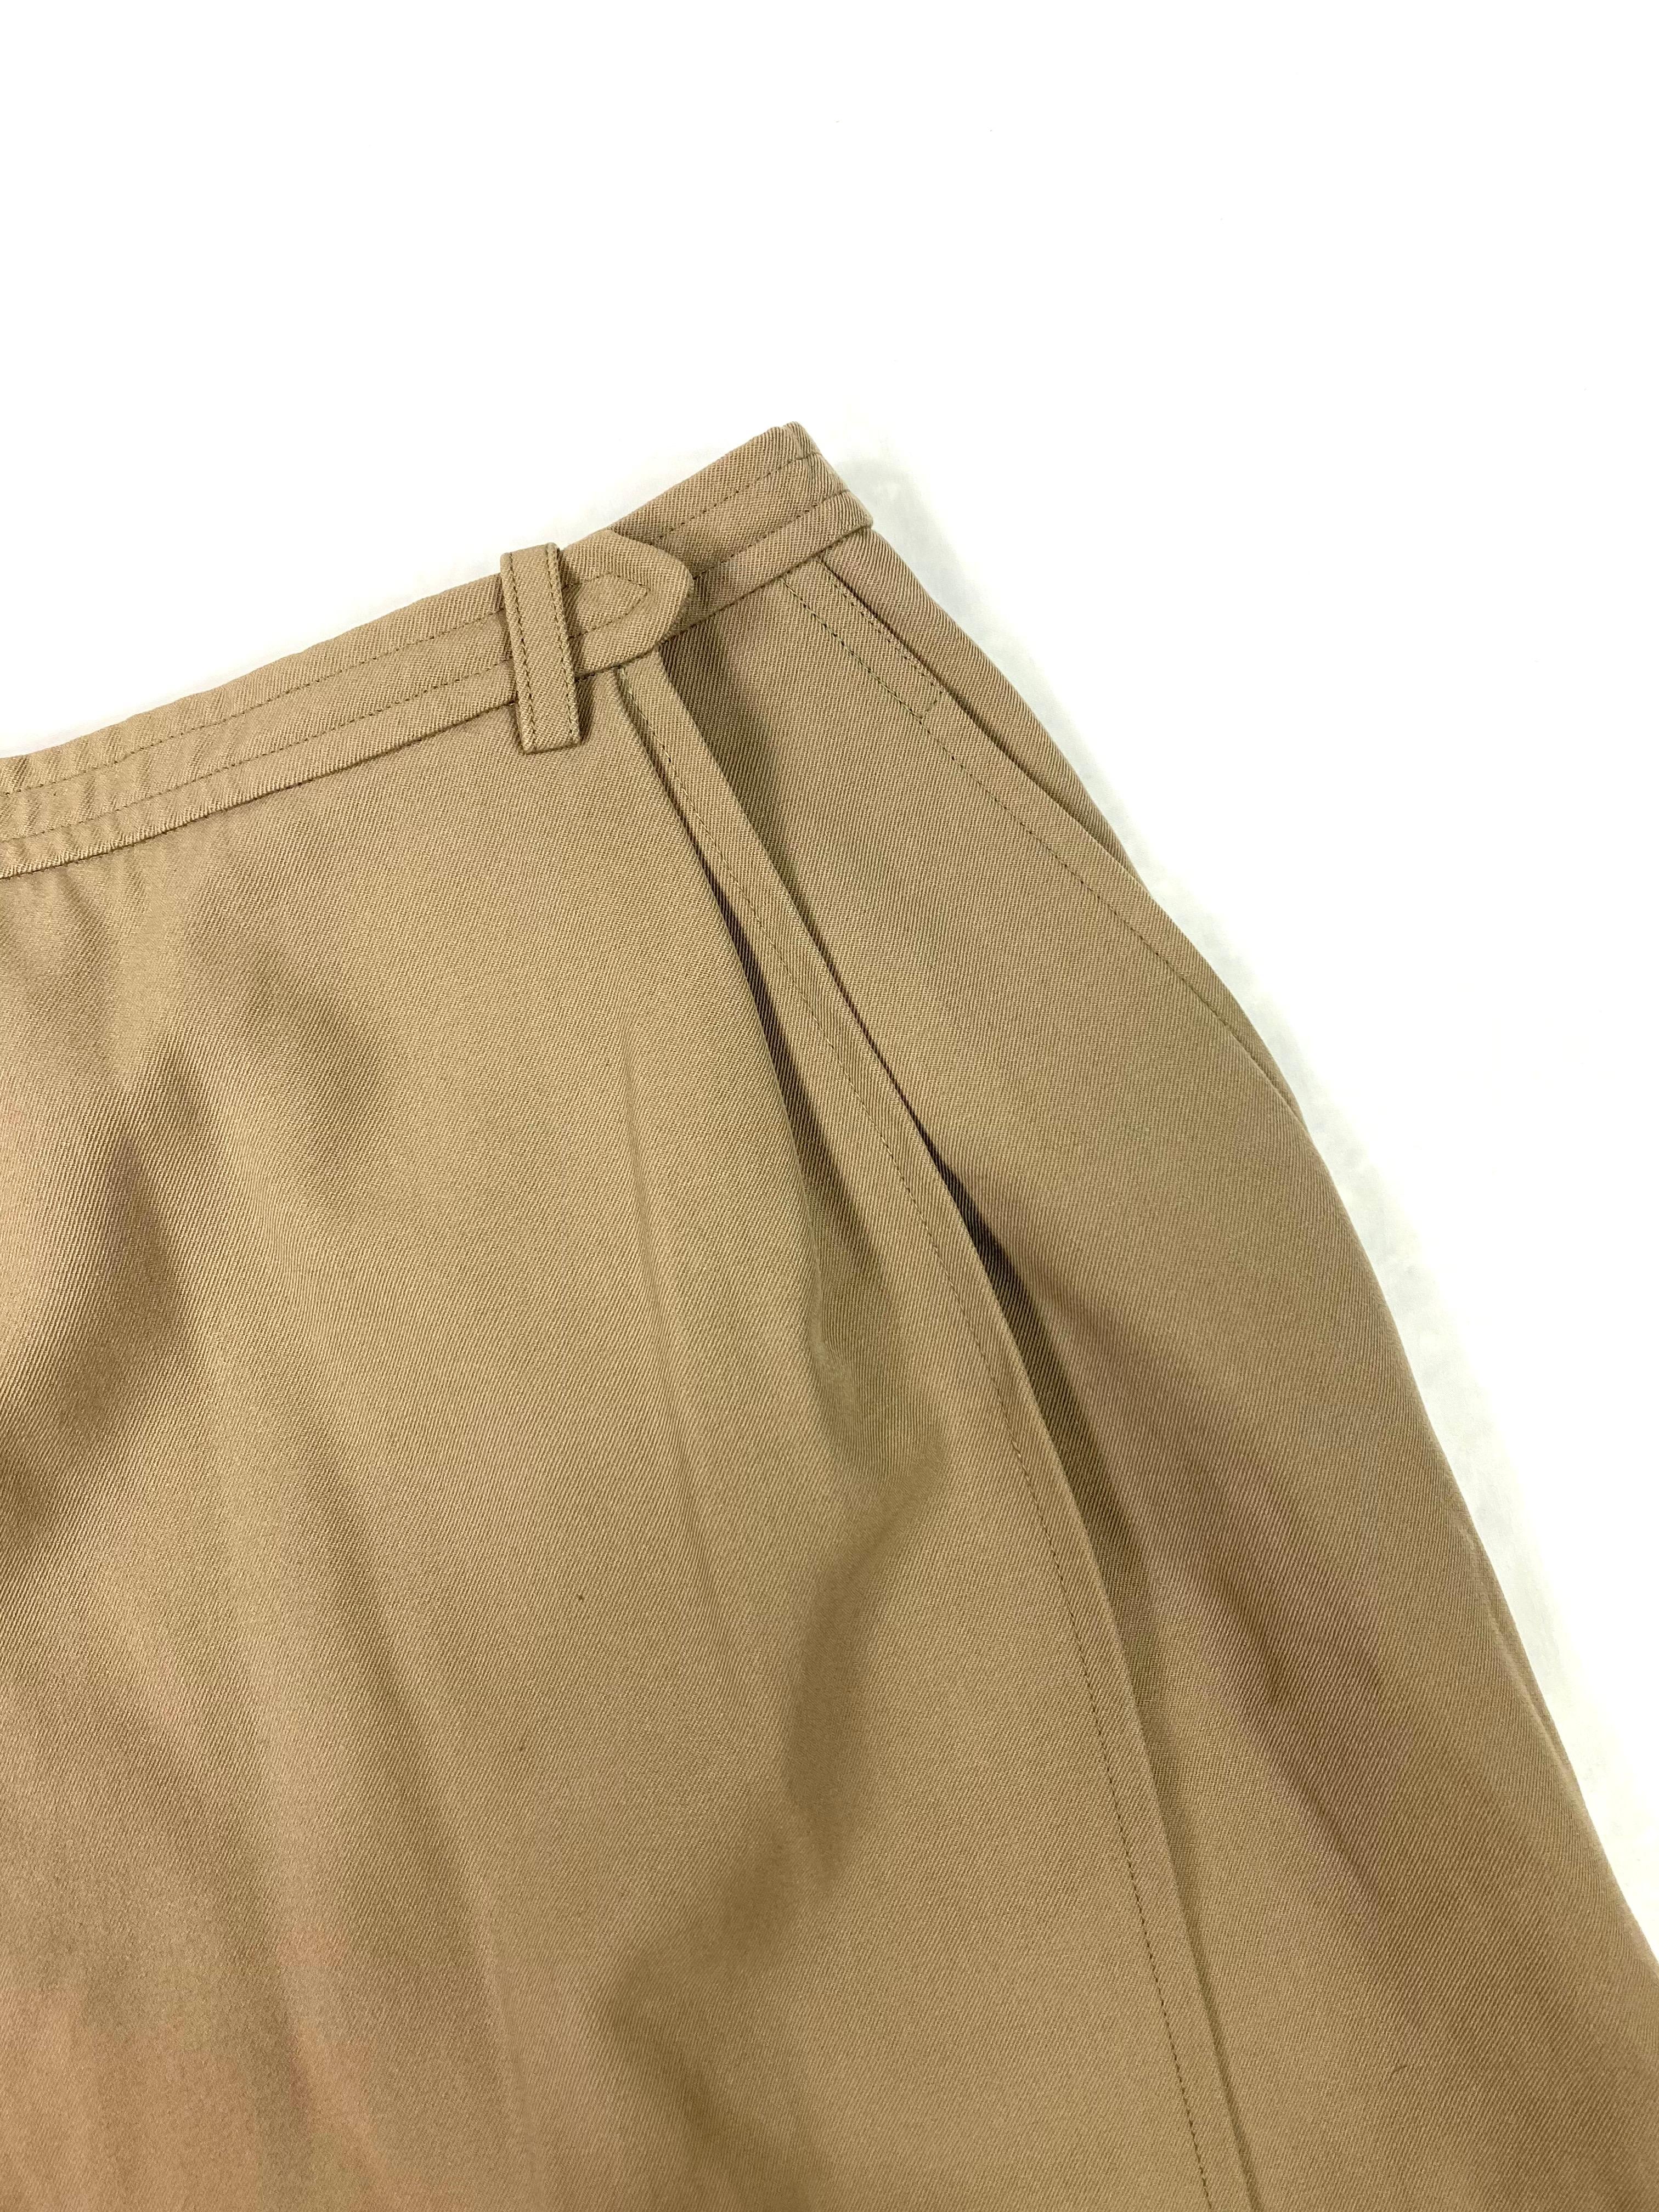 Women's Yves Saint Laurent Rive Gauche Paris Brown Skirt, Size 36 For Sale